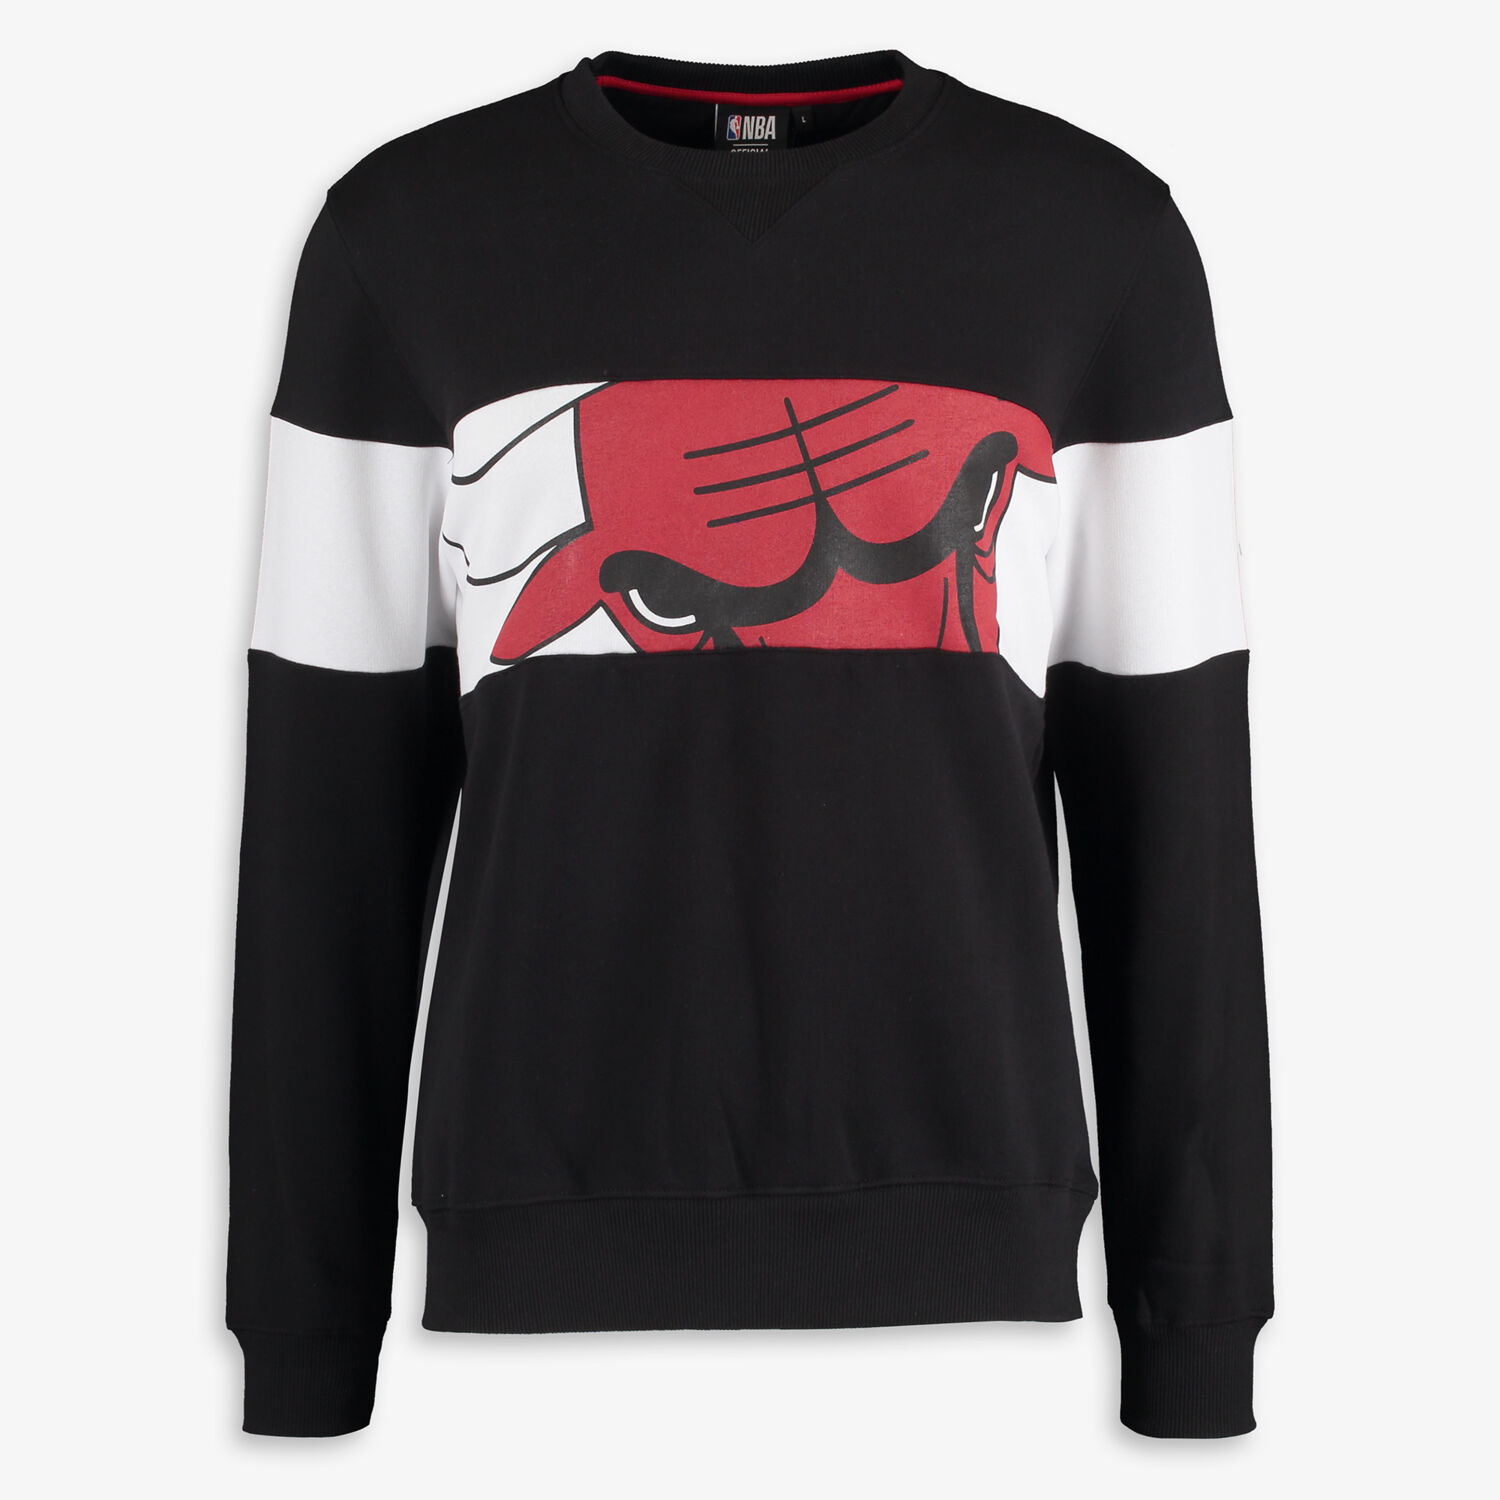 Black Chicago Bulls Sweatshirt - TK Maxx UK